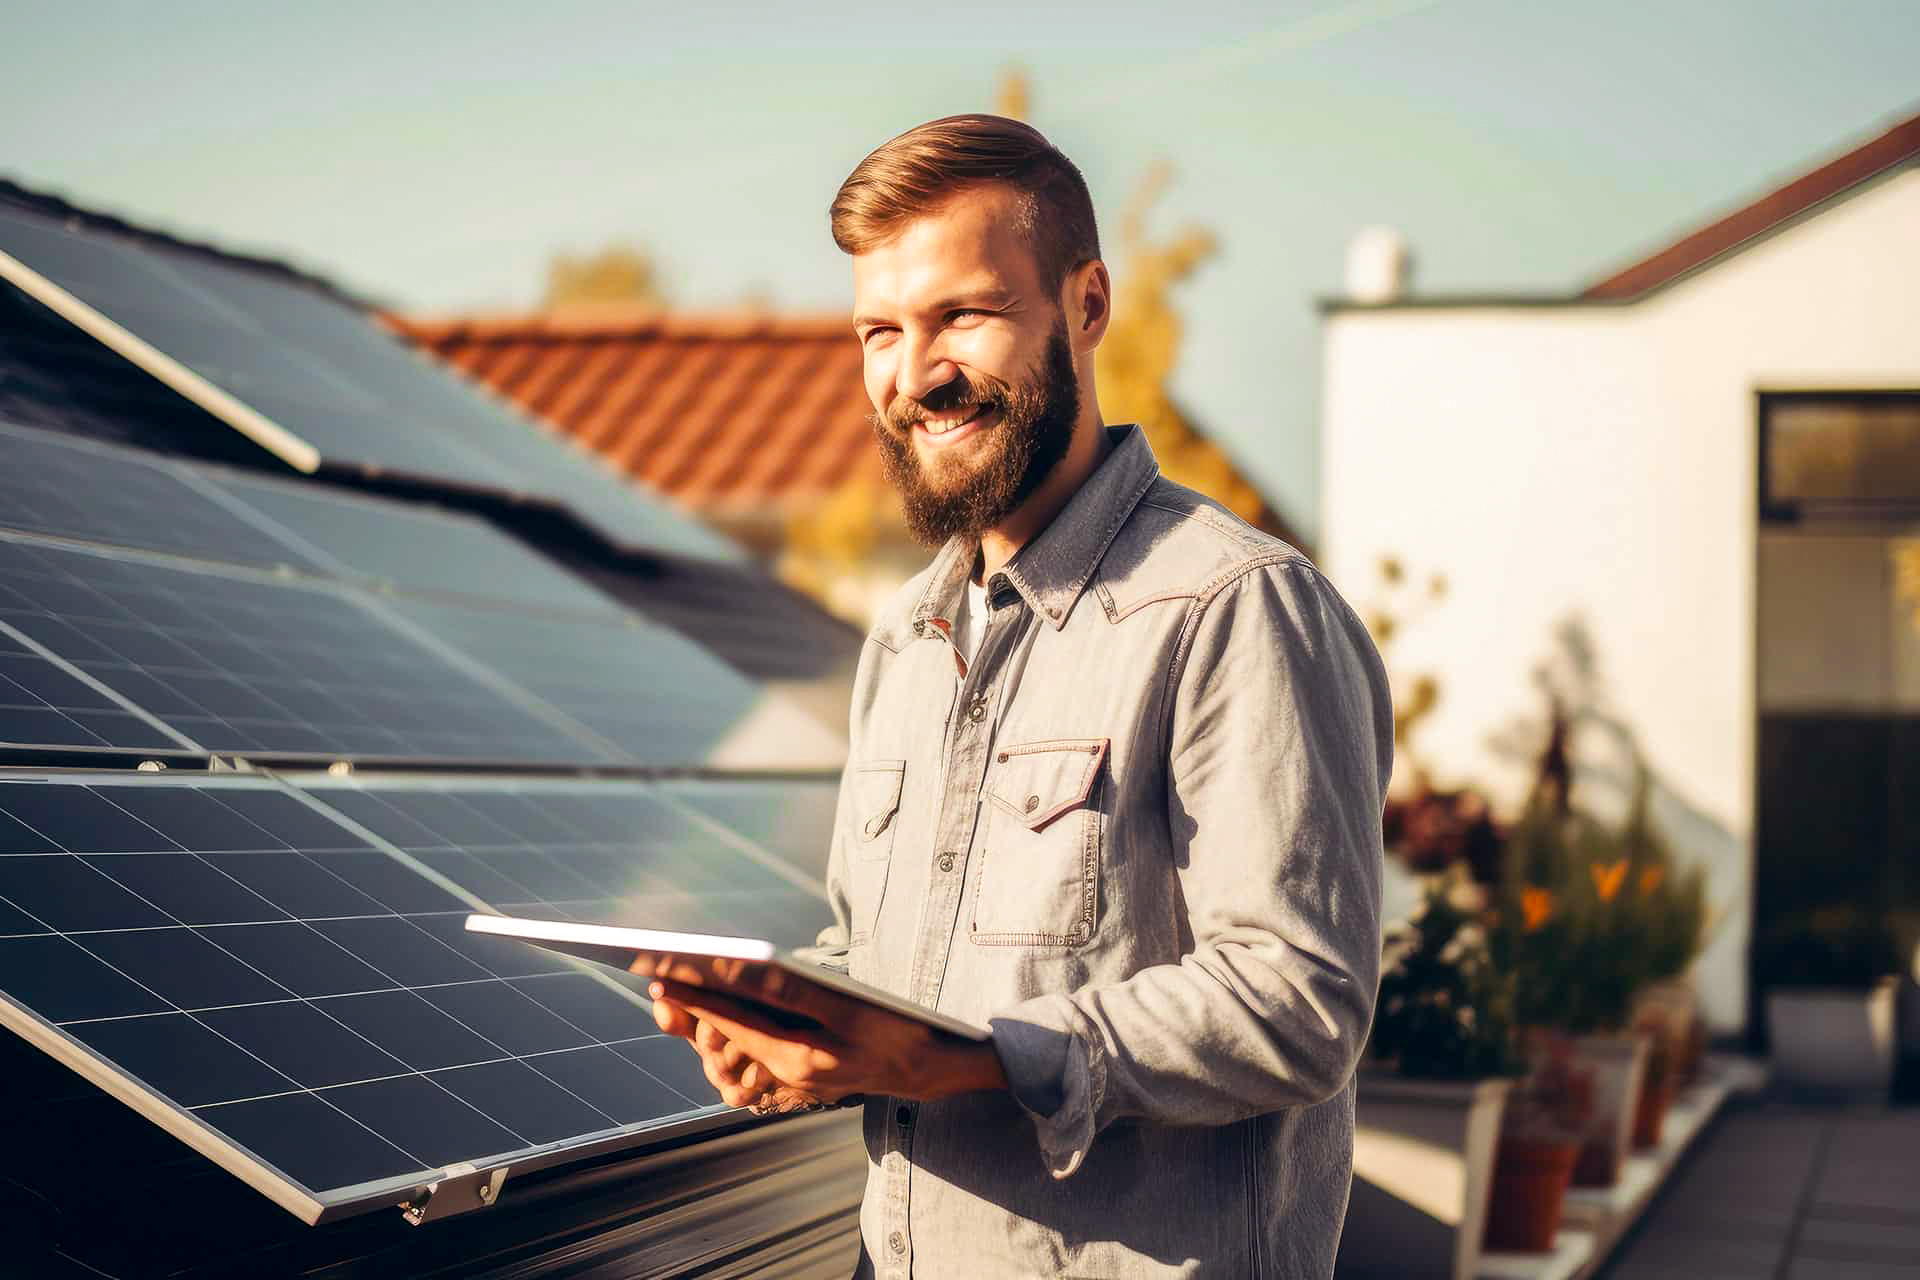 Abbildung Mann mit Pad vor Solaranlage